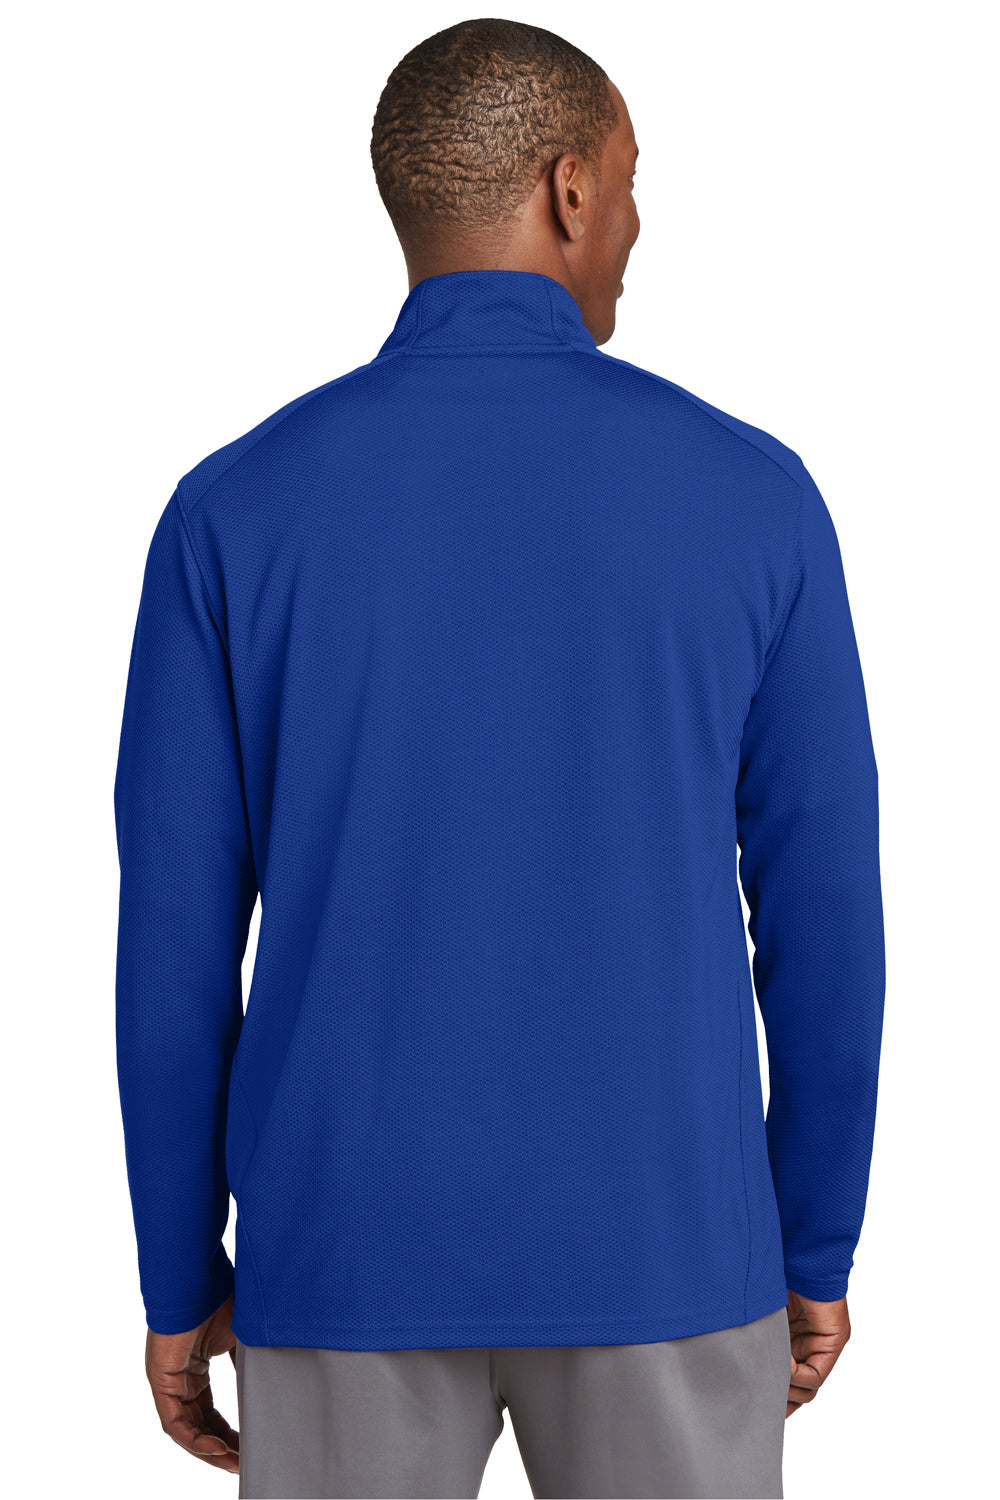 Sport-Tek ST860 Mens Sport-Wick Moisture Wicking 1/4 Zip Sweatshirt Royal Blue Back